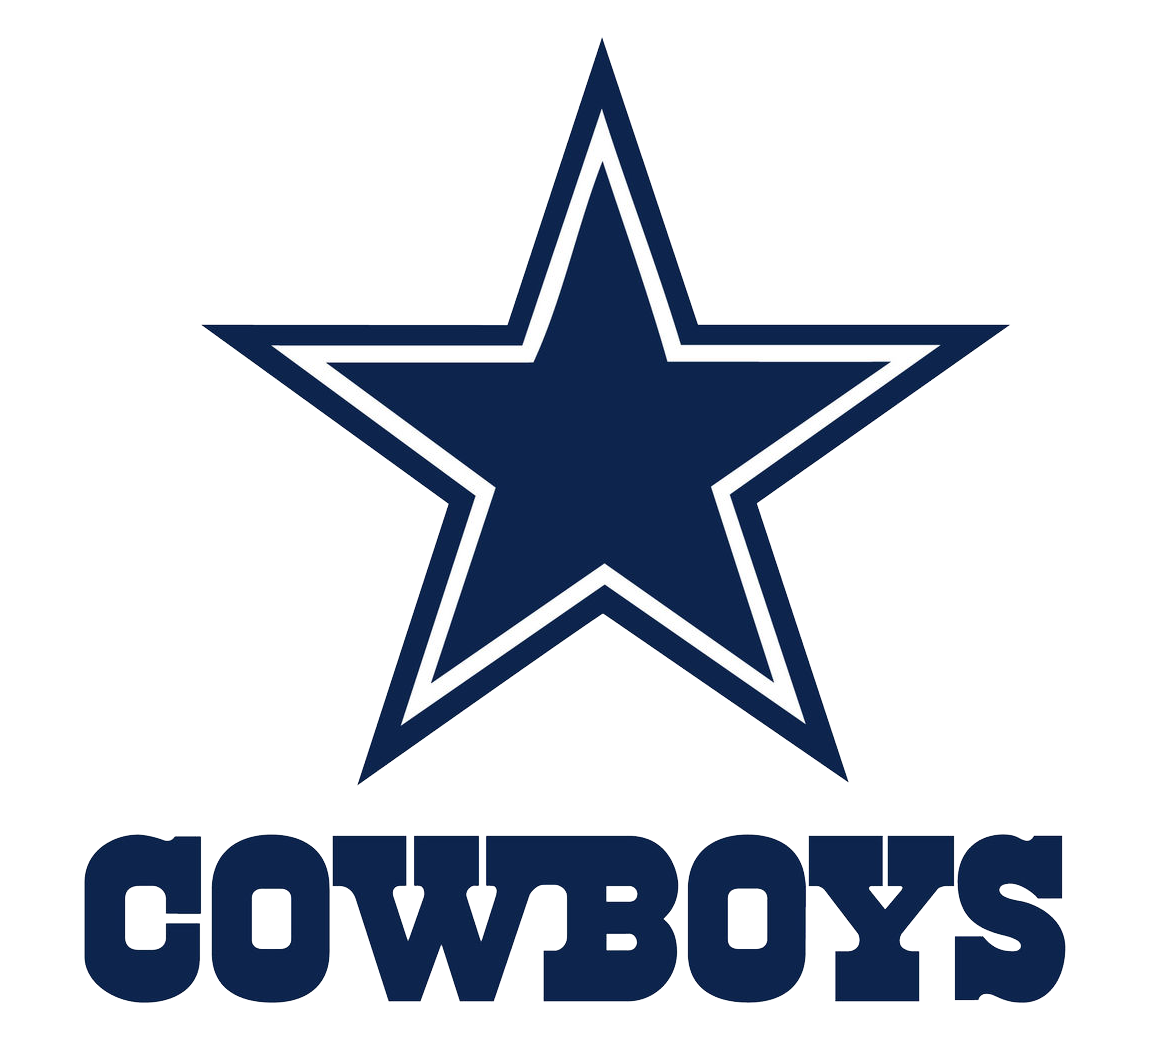 Cowboy logo PNG image